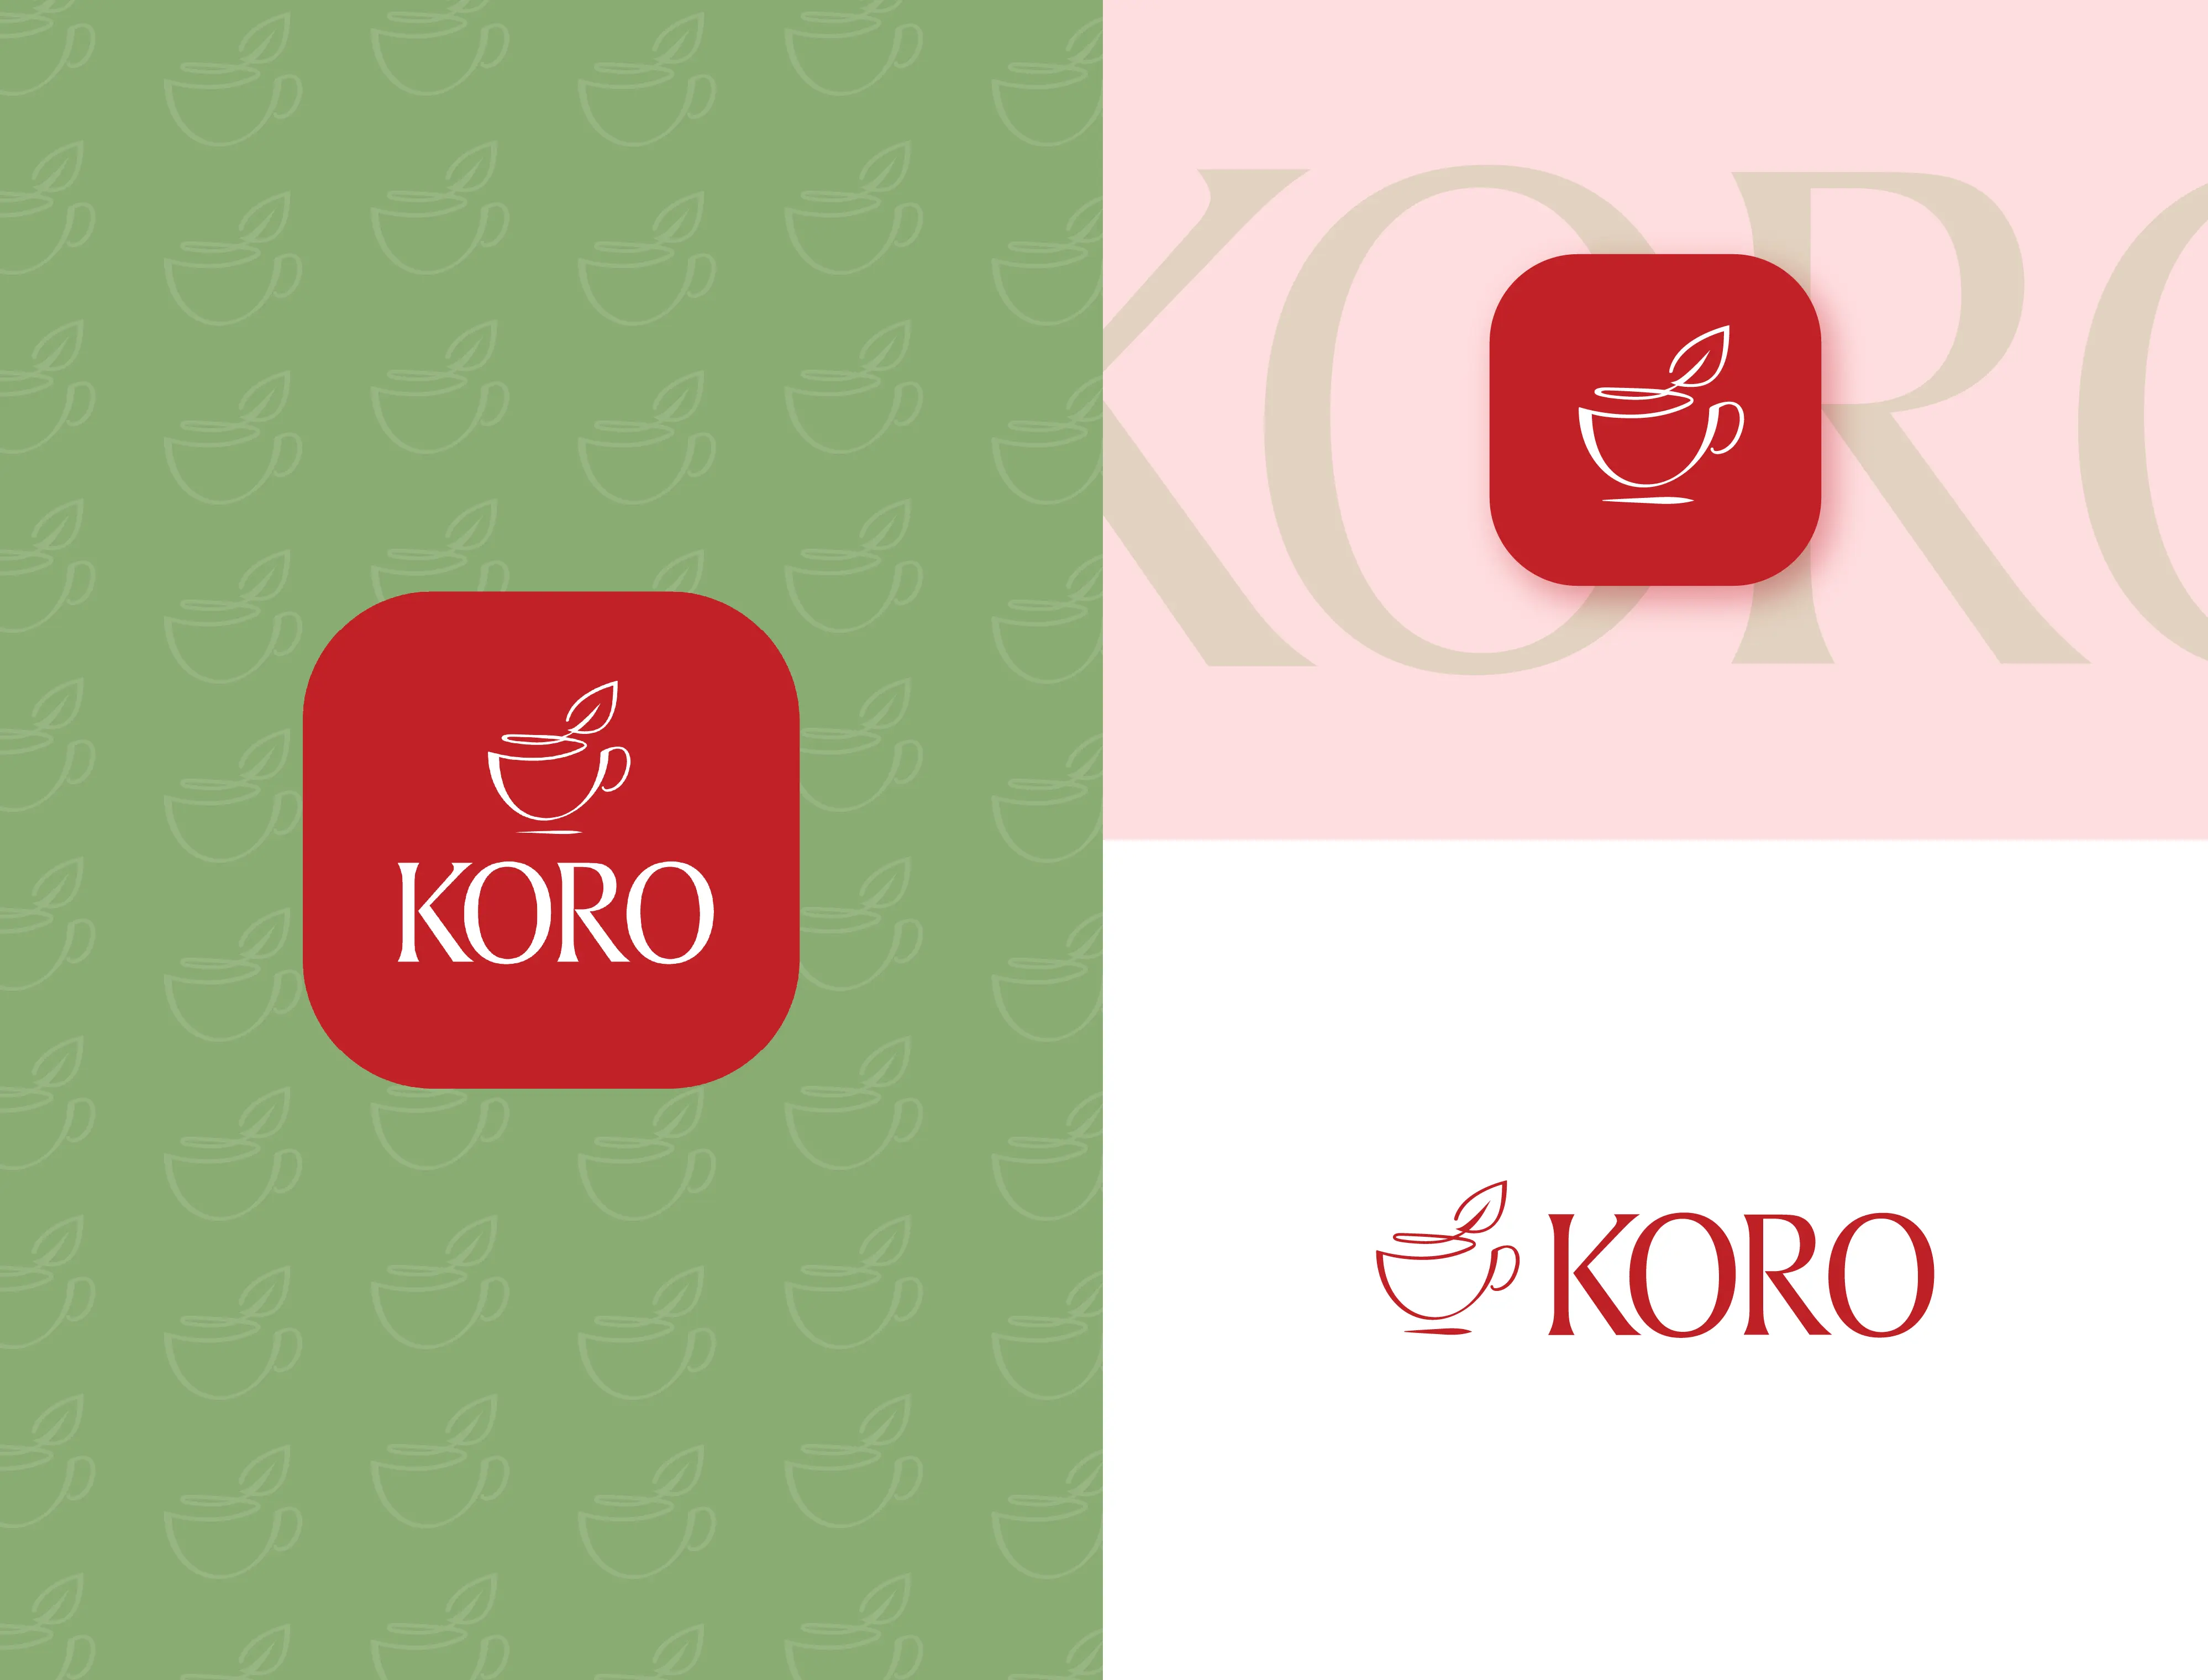 KORO logo variations